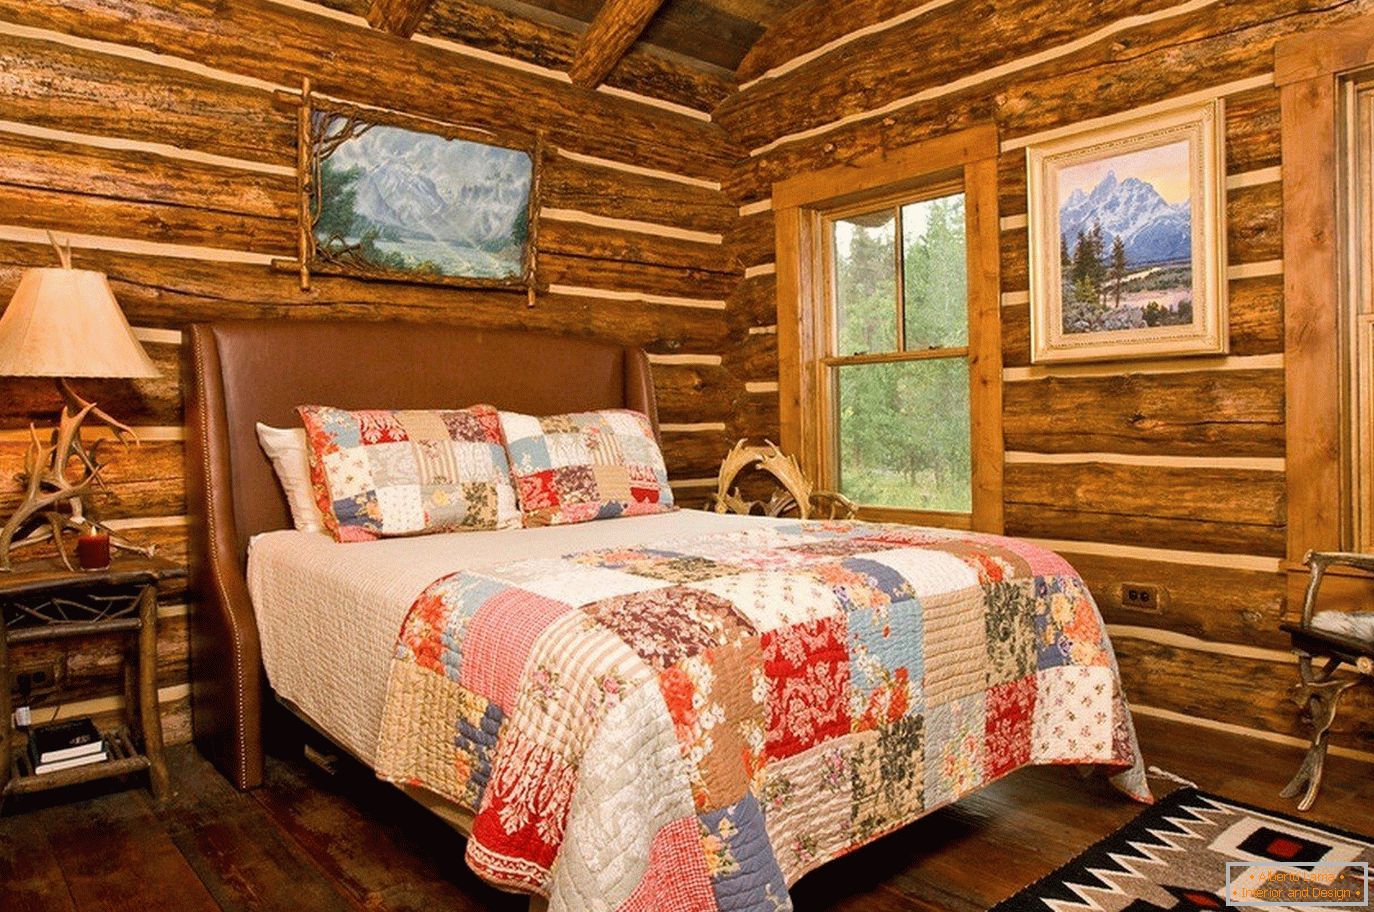 Casă de lemn, pereți în dormitor fără finisare